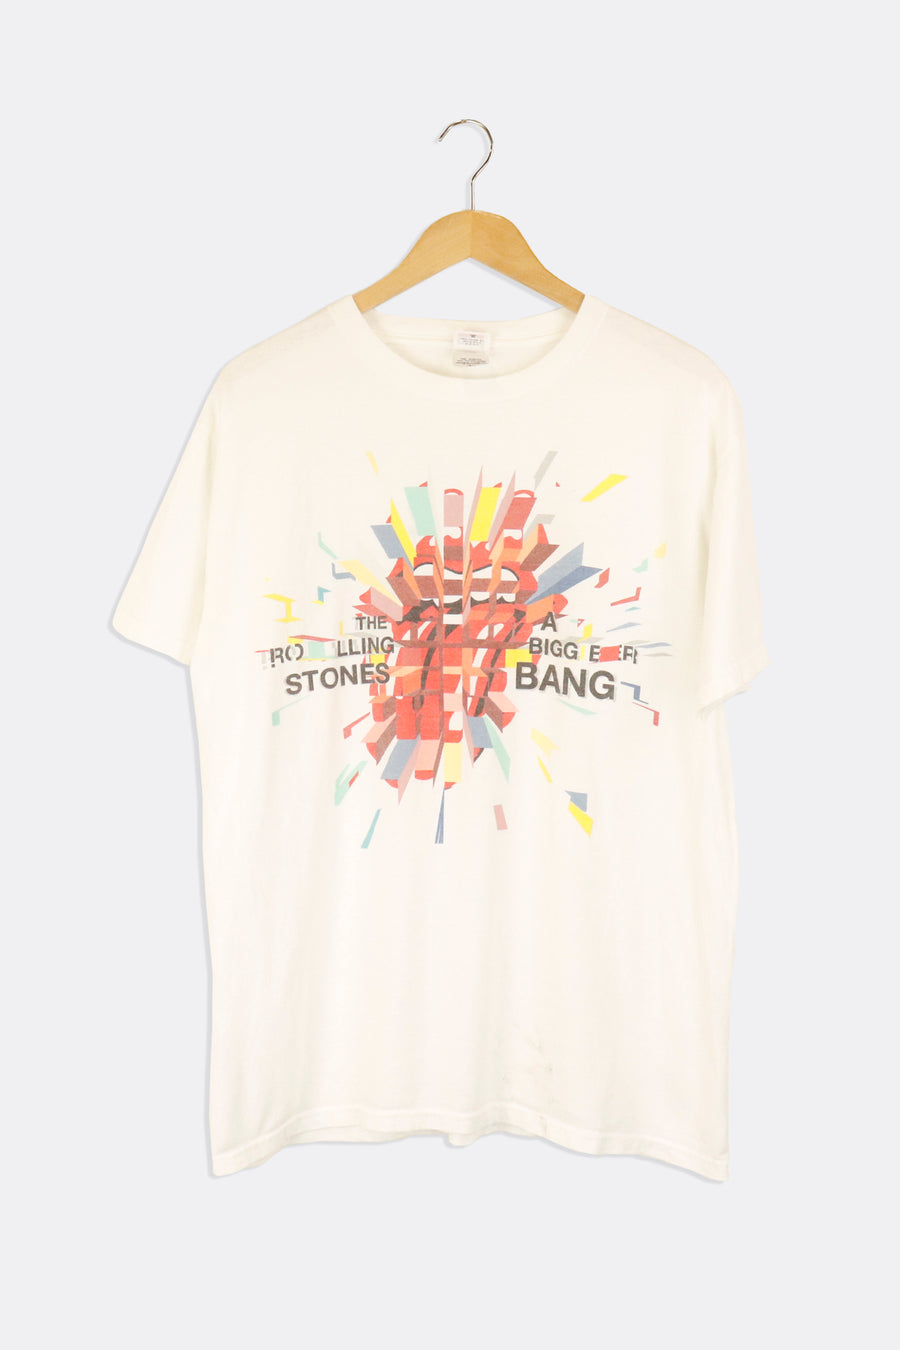 Vintage 2005 The Rolling Stones A Bigger Bang Graphic Tour T Shirt Sz L